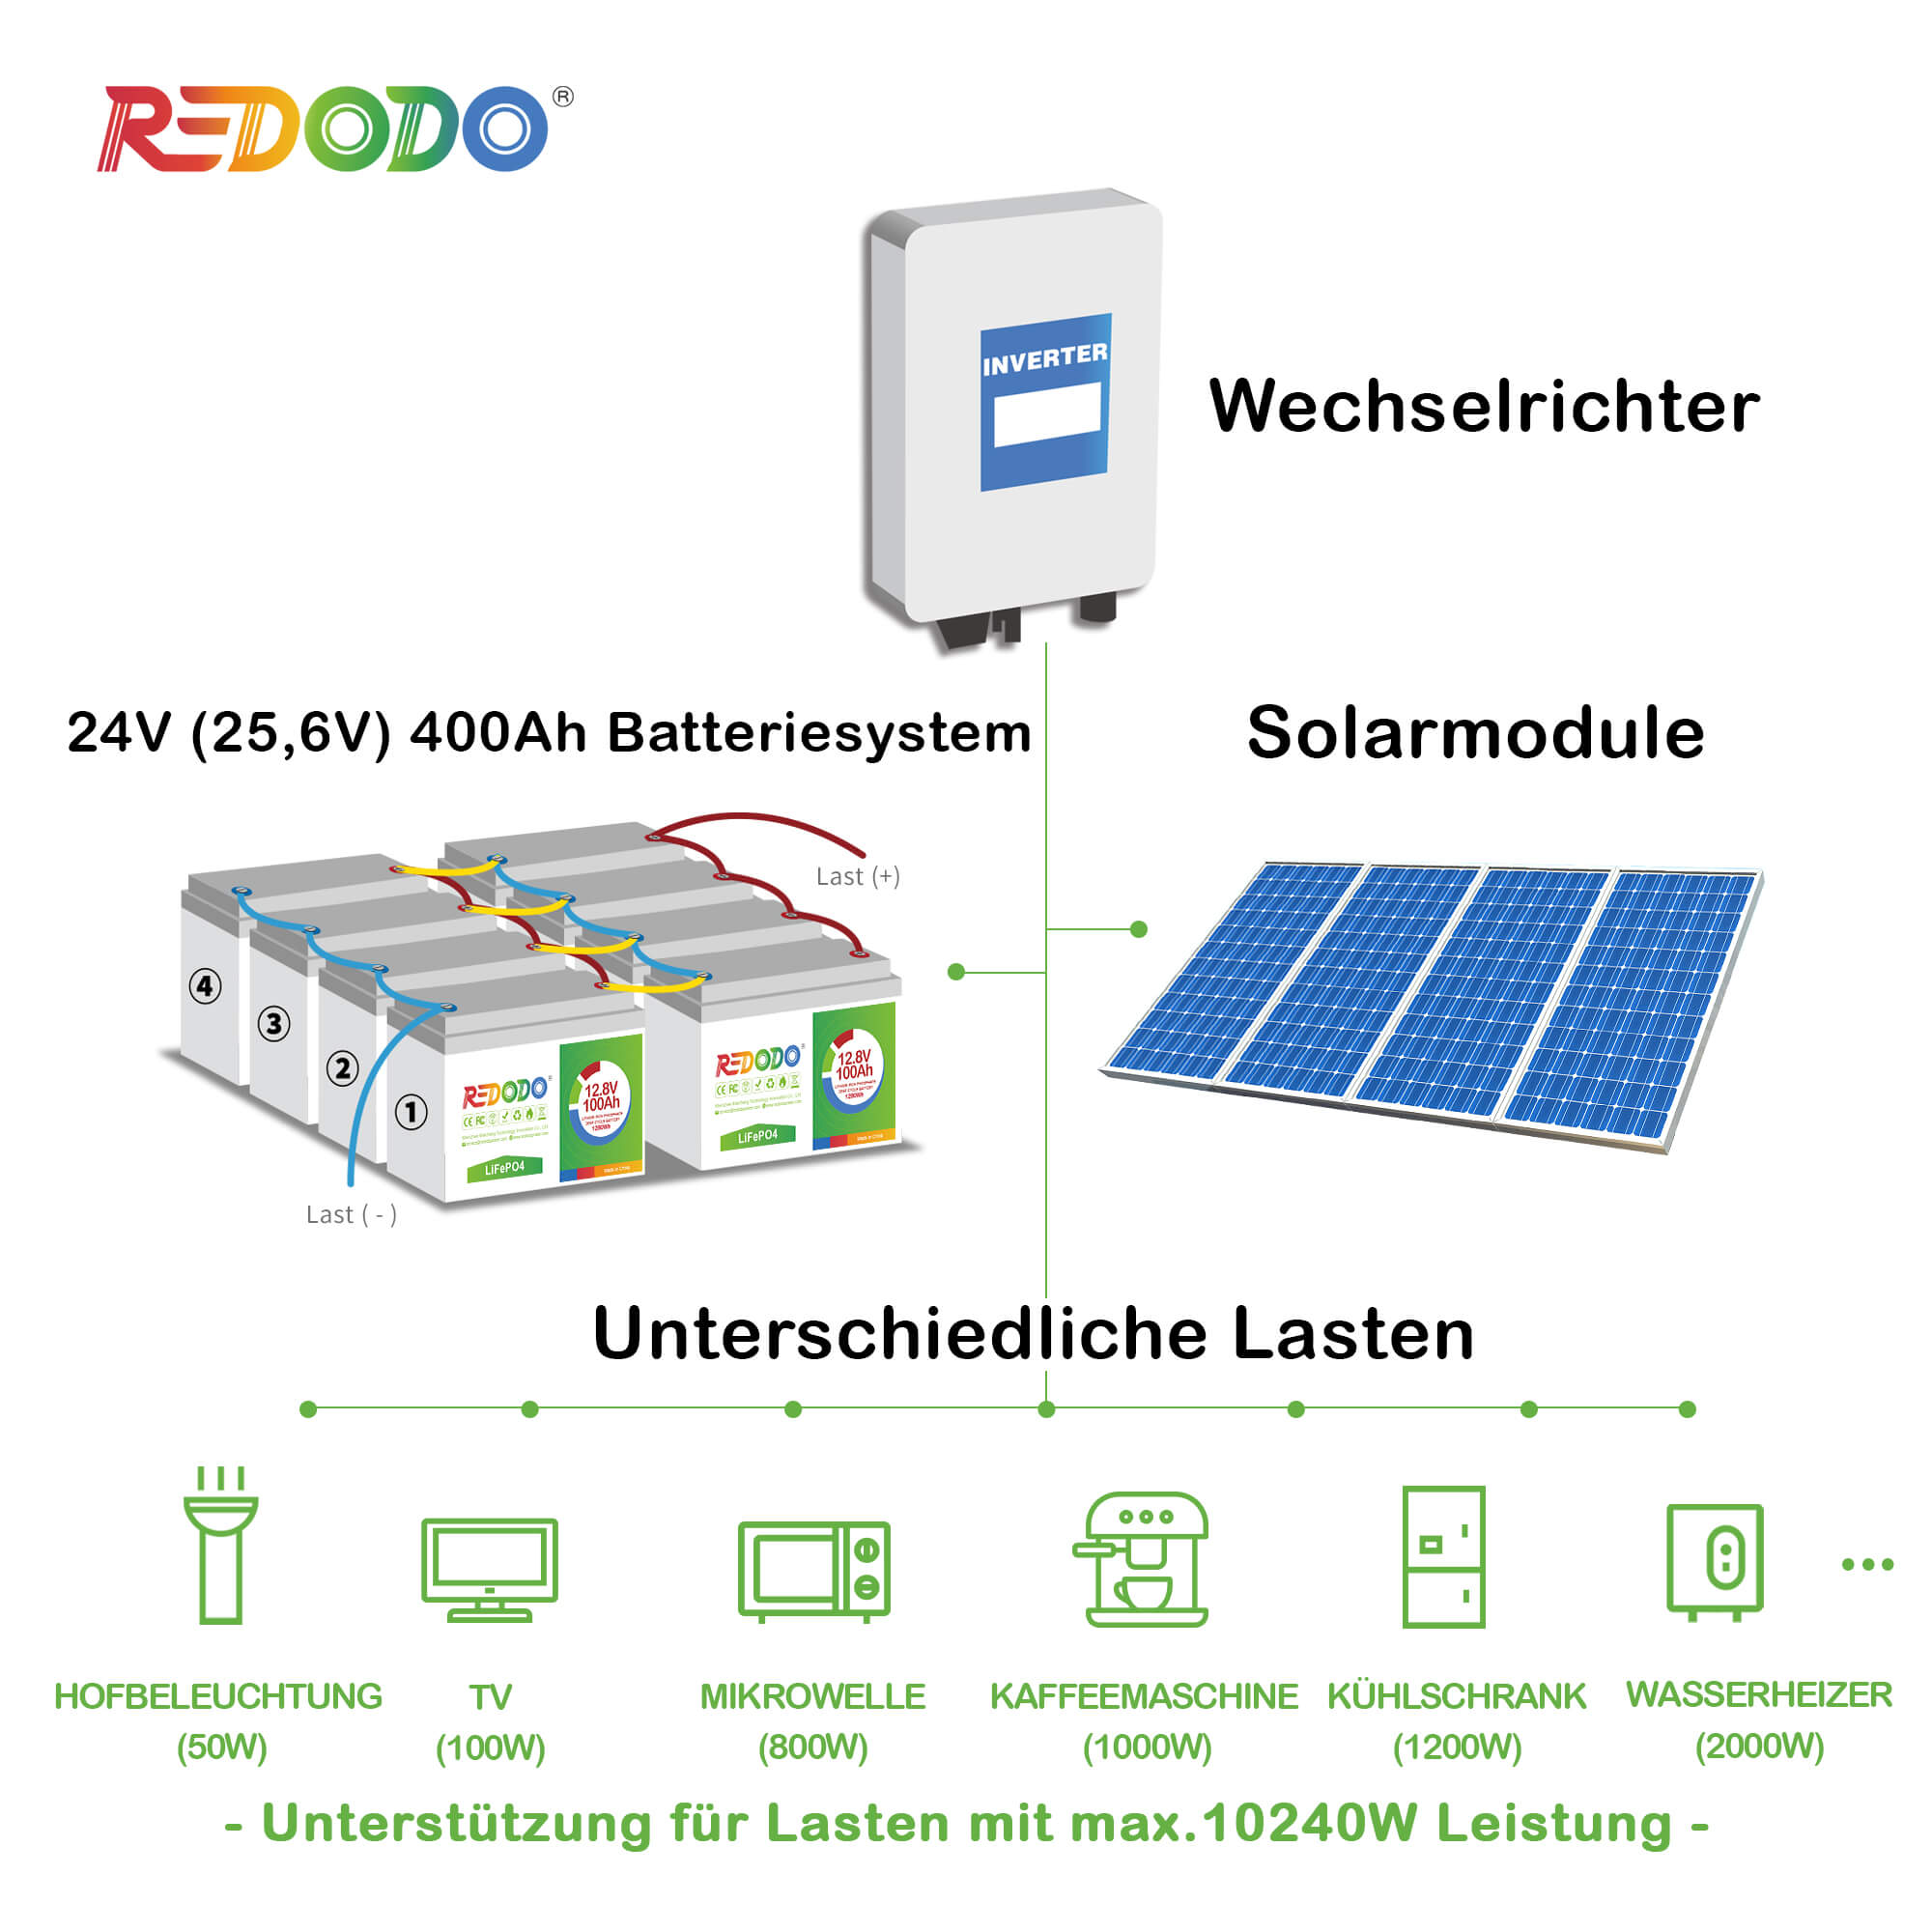 Befreiung von 19% MwSt - Redodo 24V 100Ah Deep Cycle LiFePO4 Batterie - Nur  für deutsche und österreichische Wohngebäude gelten